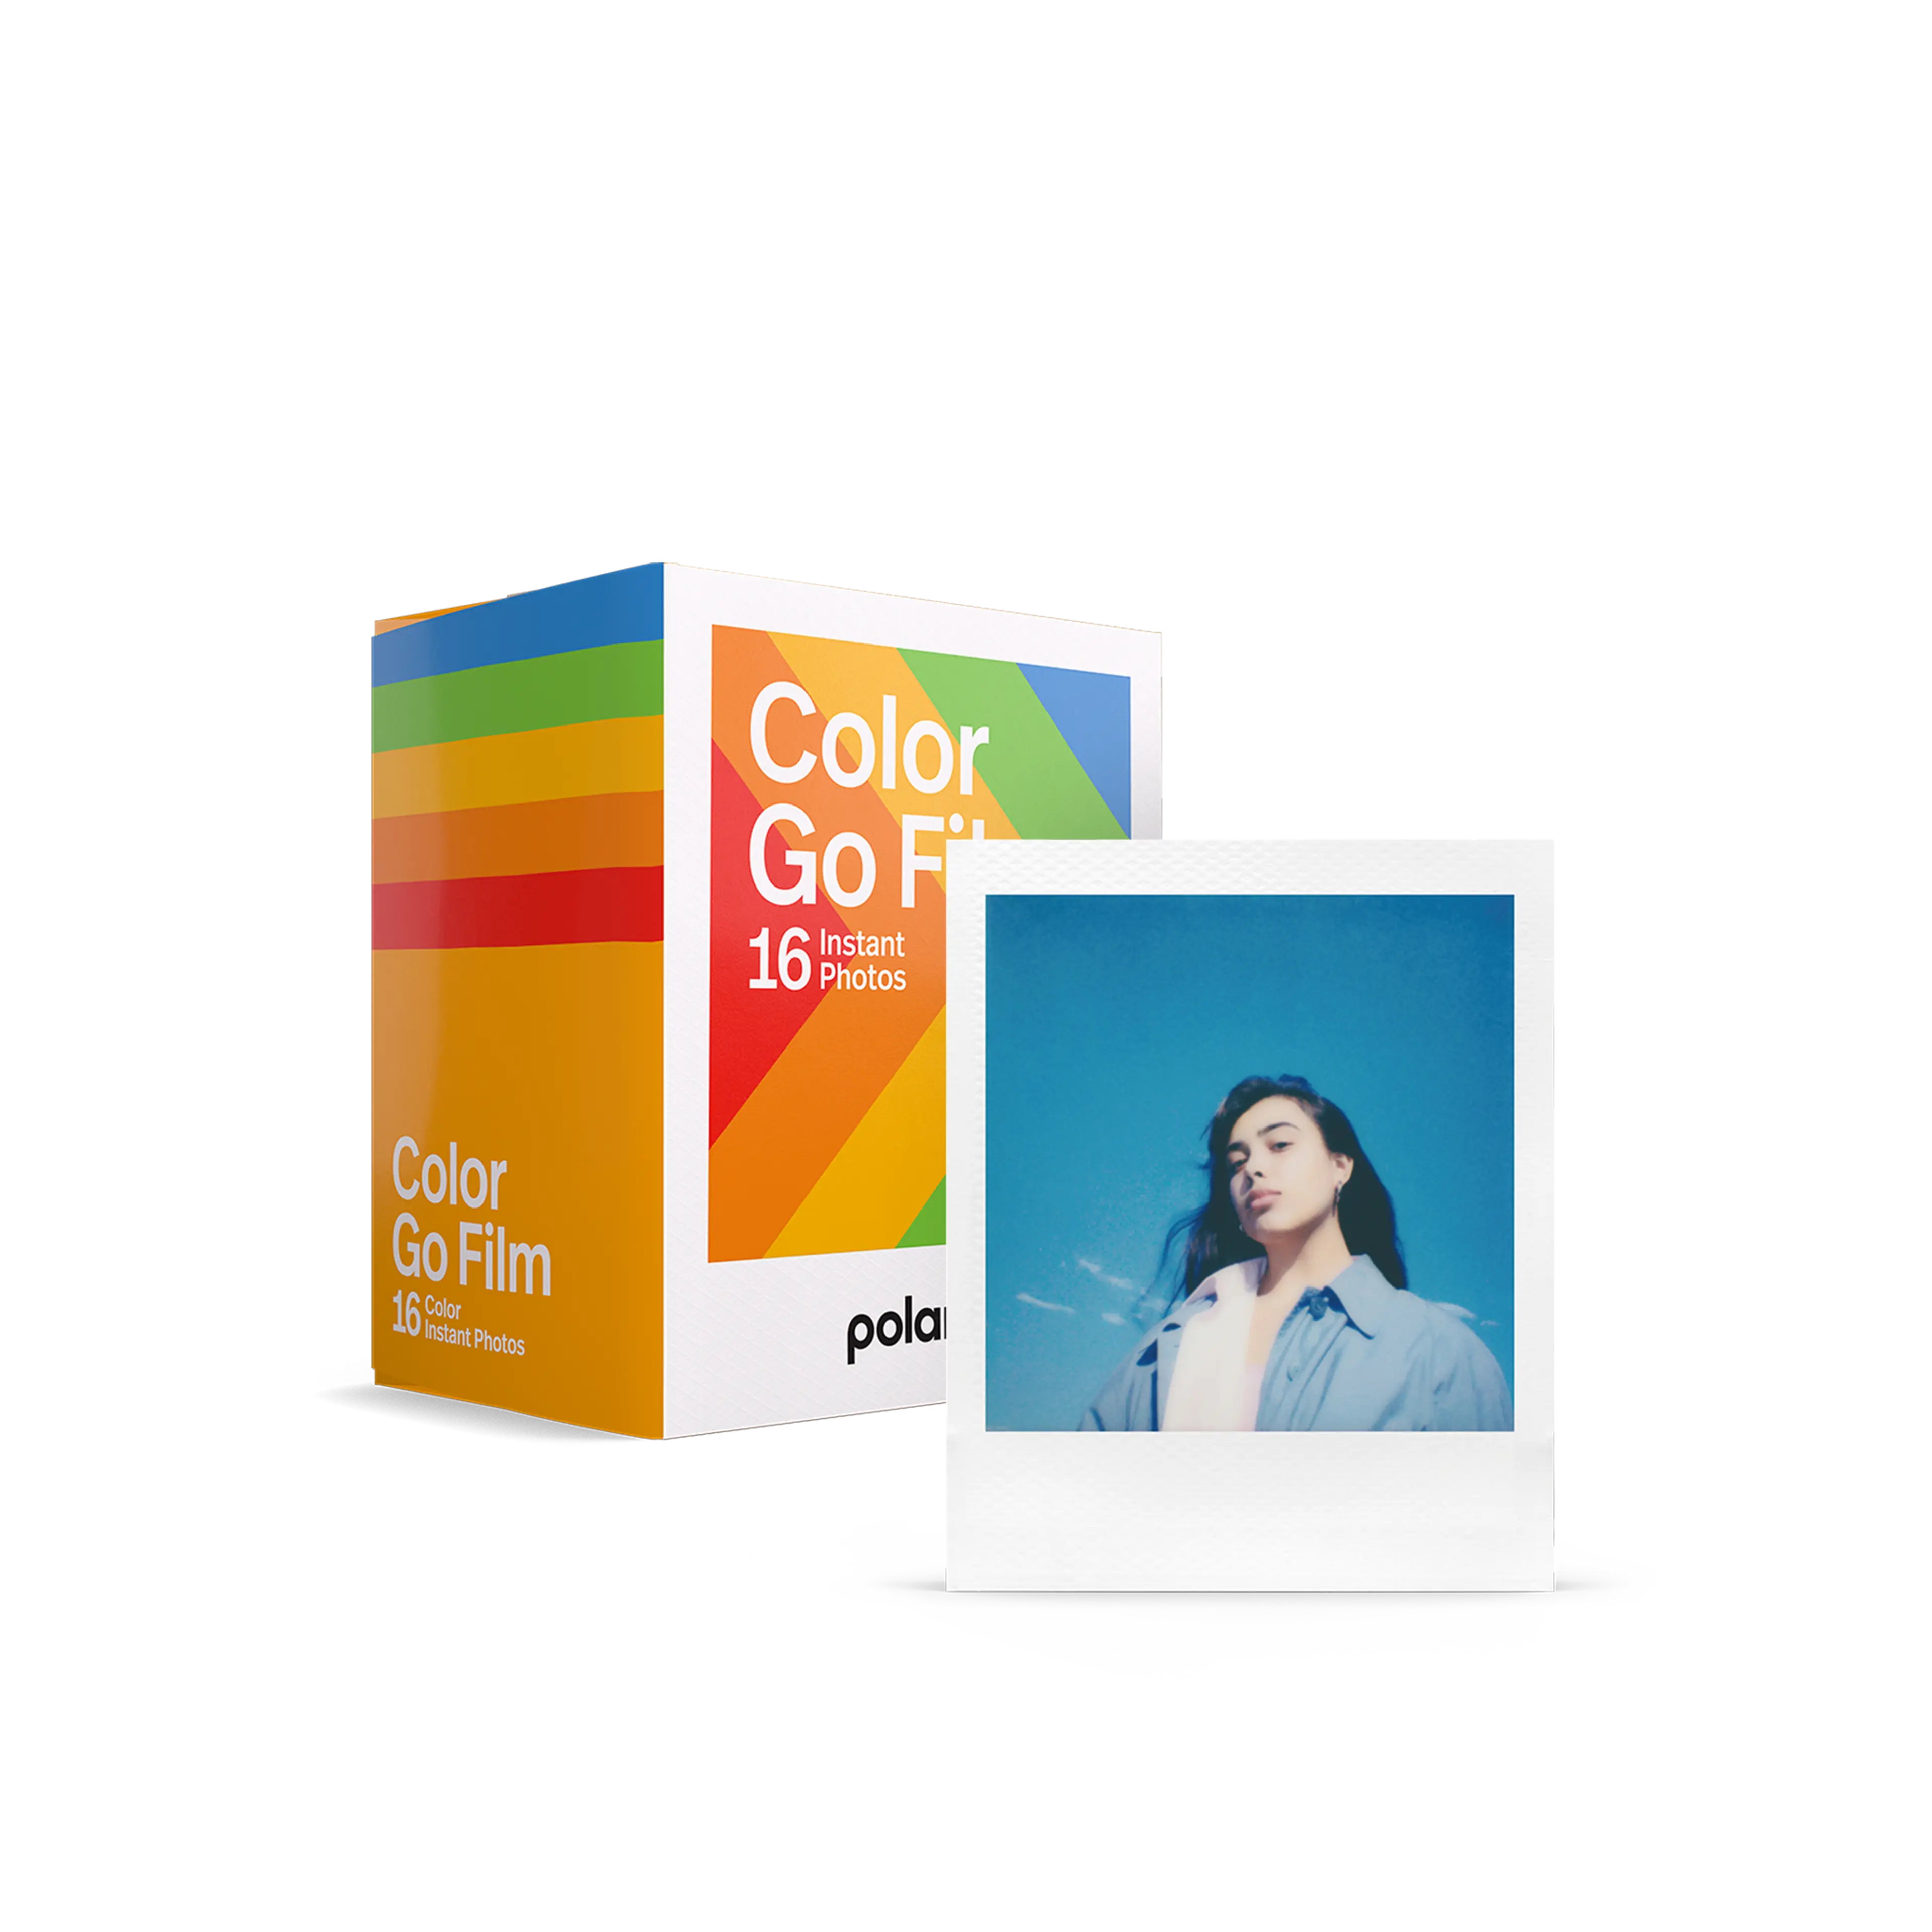 Pack double de films Color Go